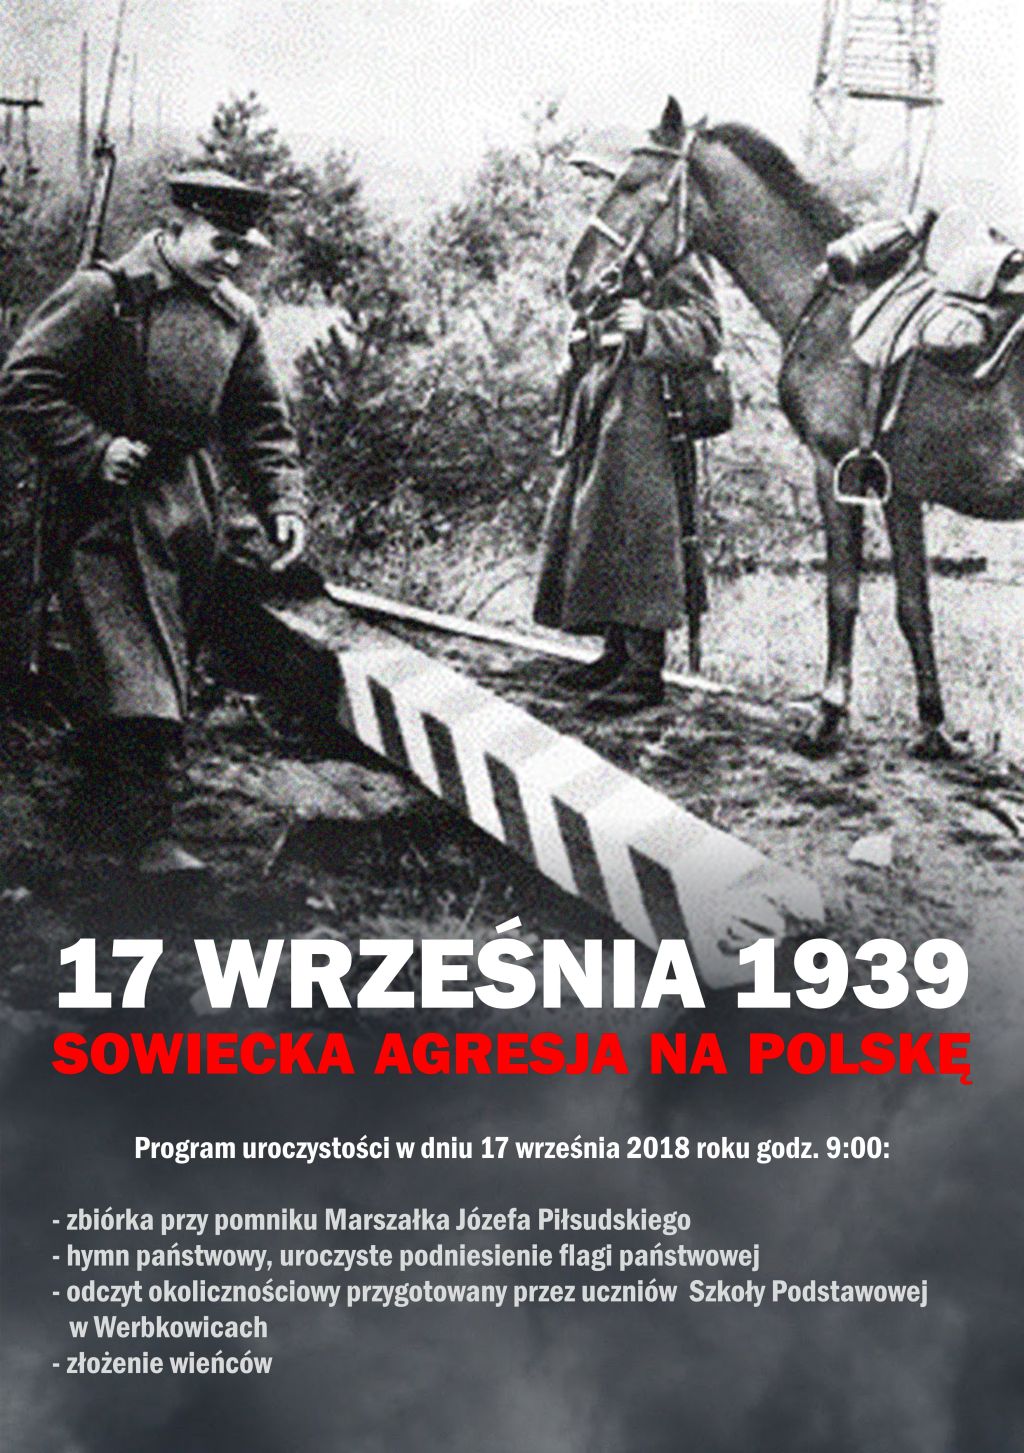 17 września 1939 sowiecka agresja na Polskę